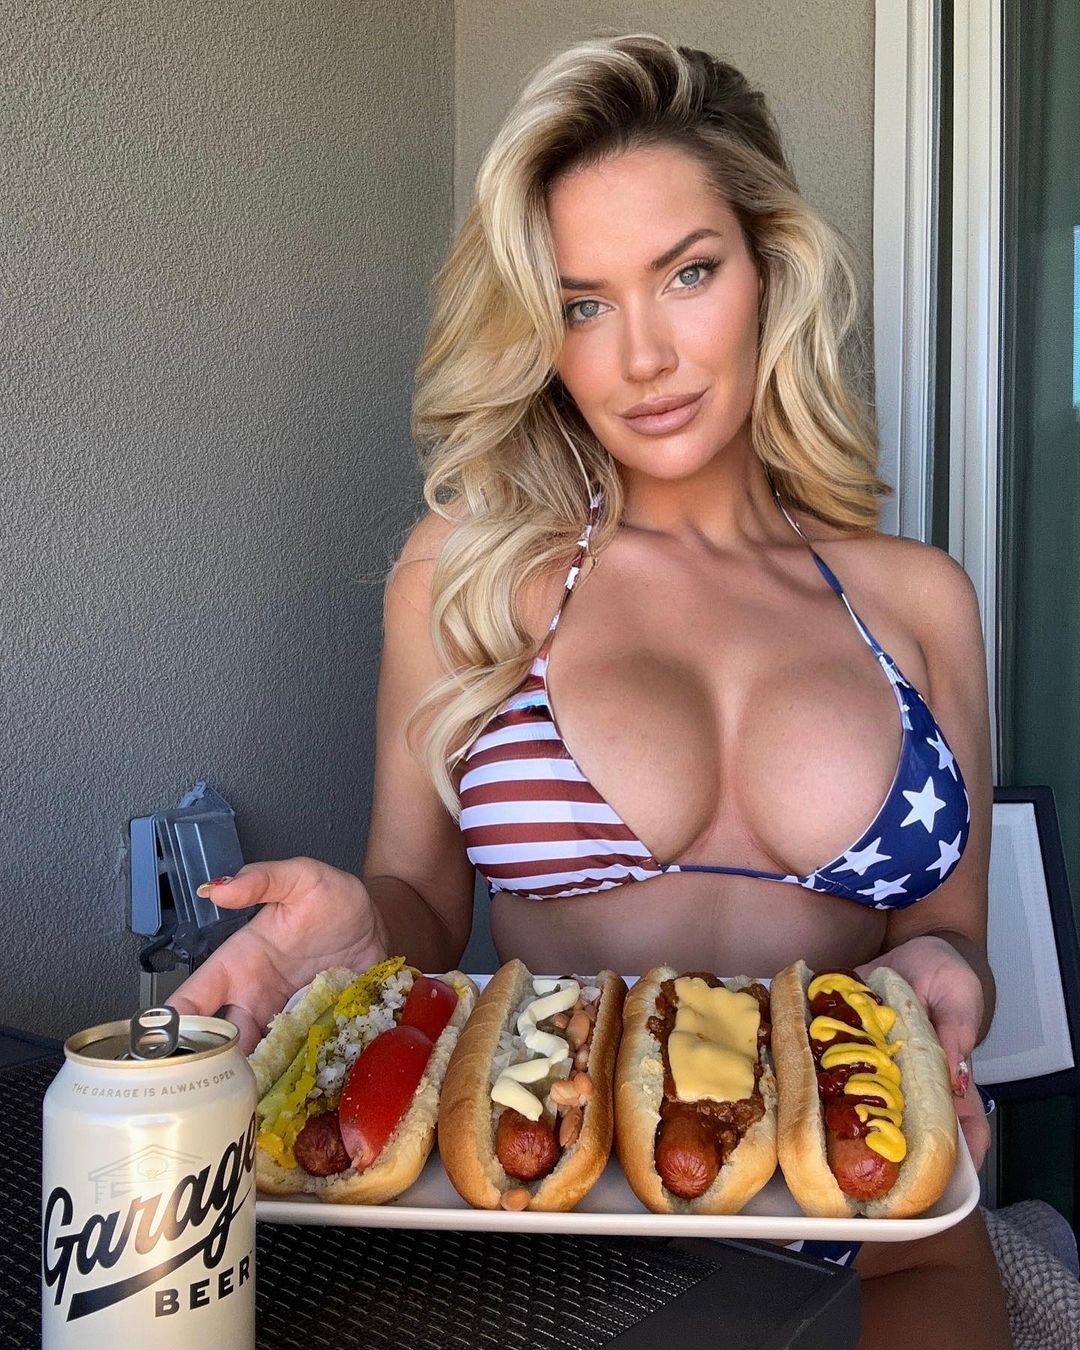 Paige celebró el US Open en bikini de barras y estrellas, comiendo hot dogs